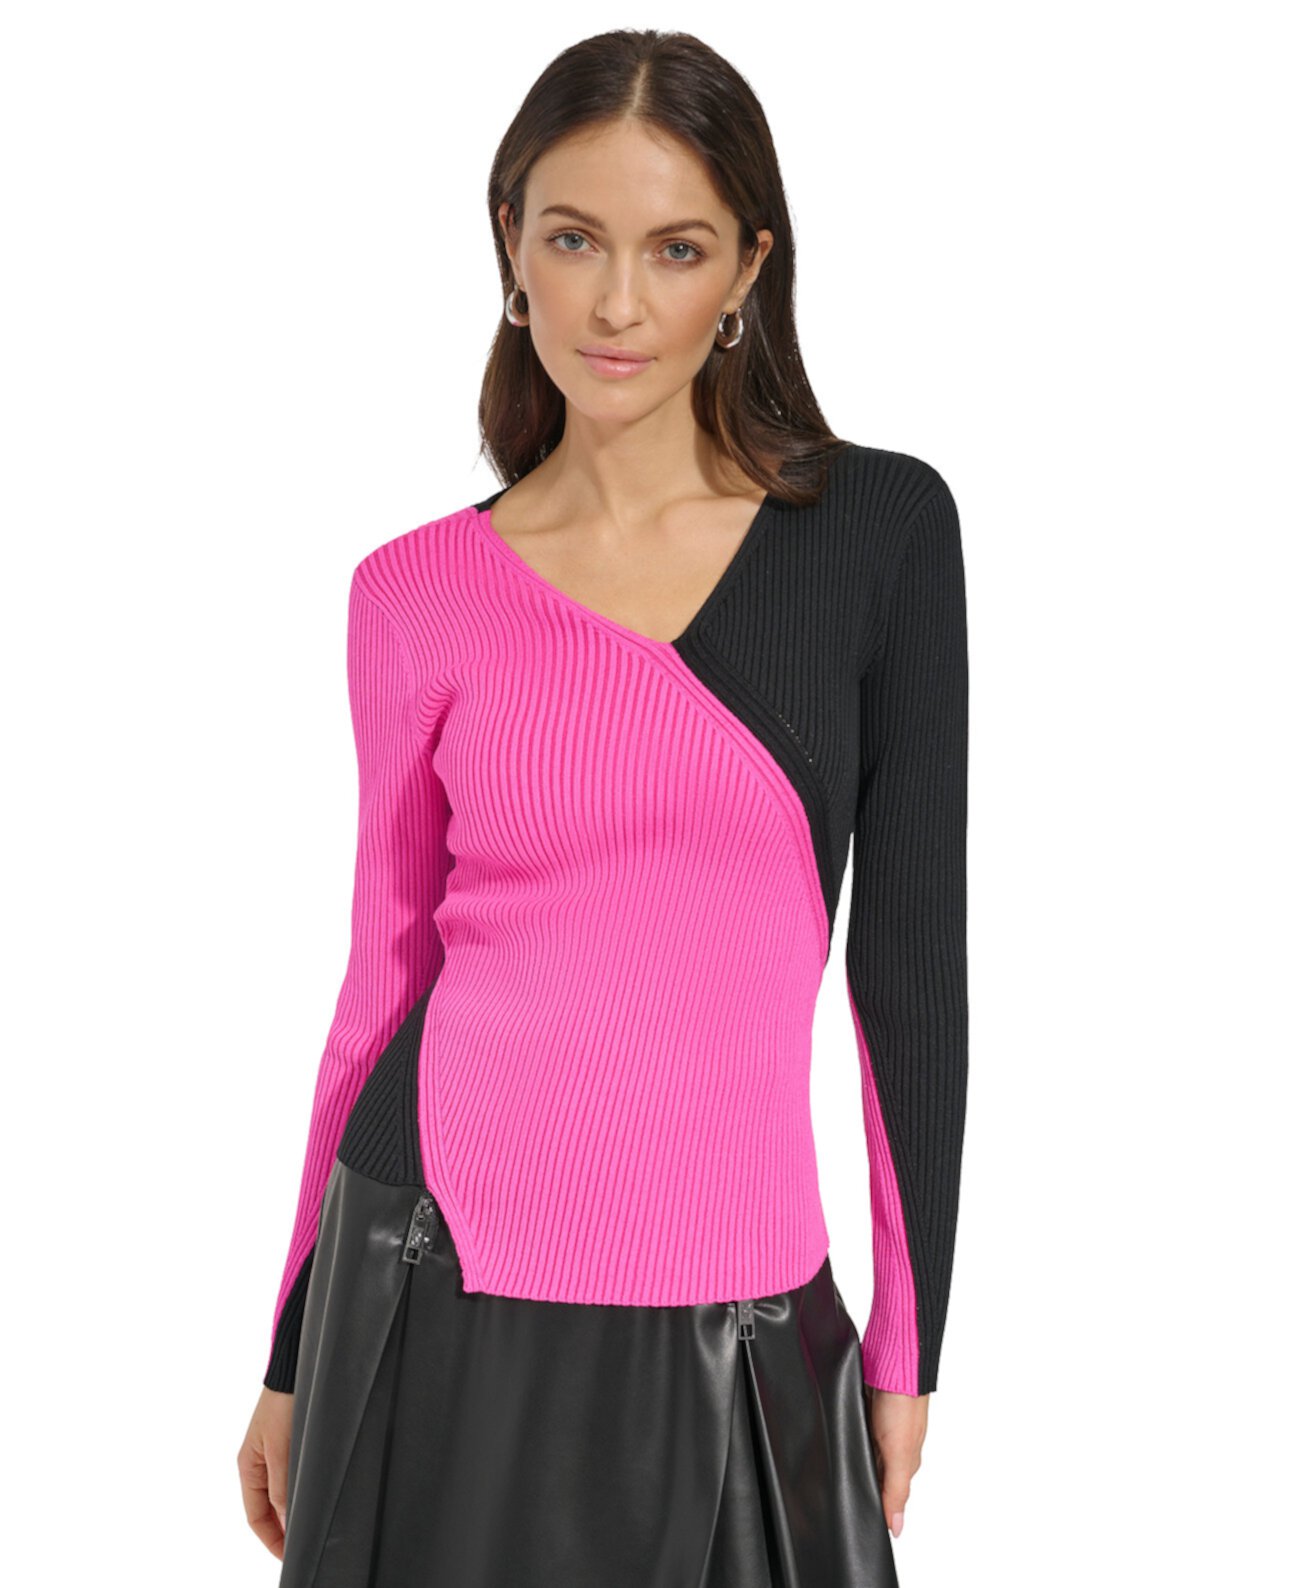 Женский асимметричный свитер в рубчик с цветными блоками DKNY